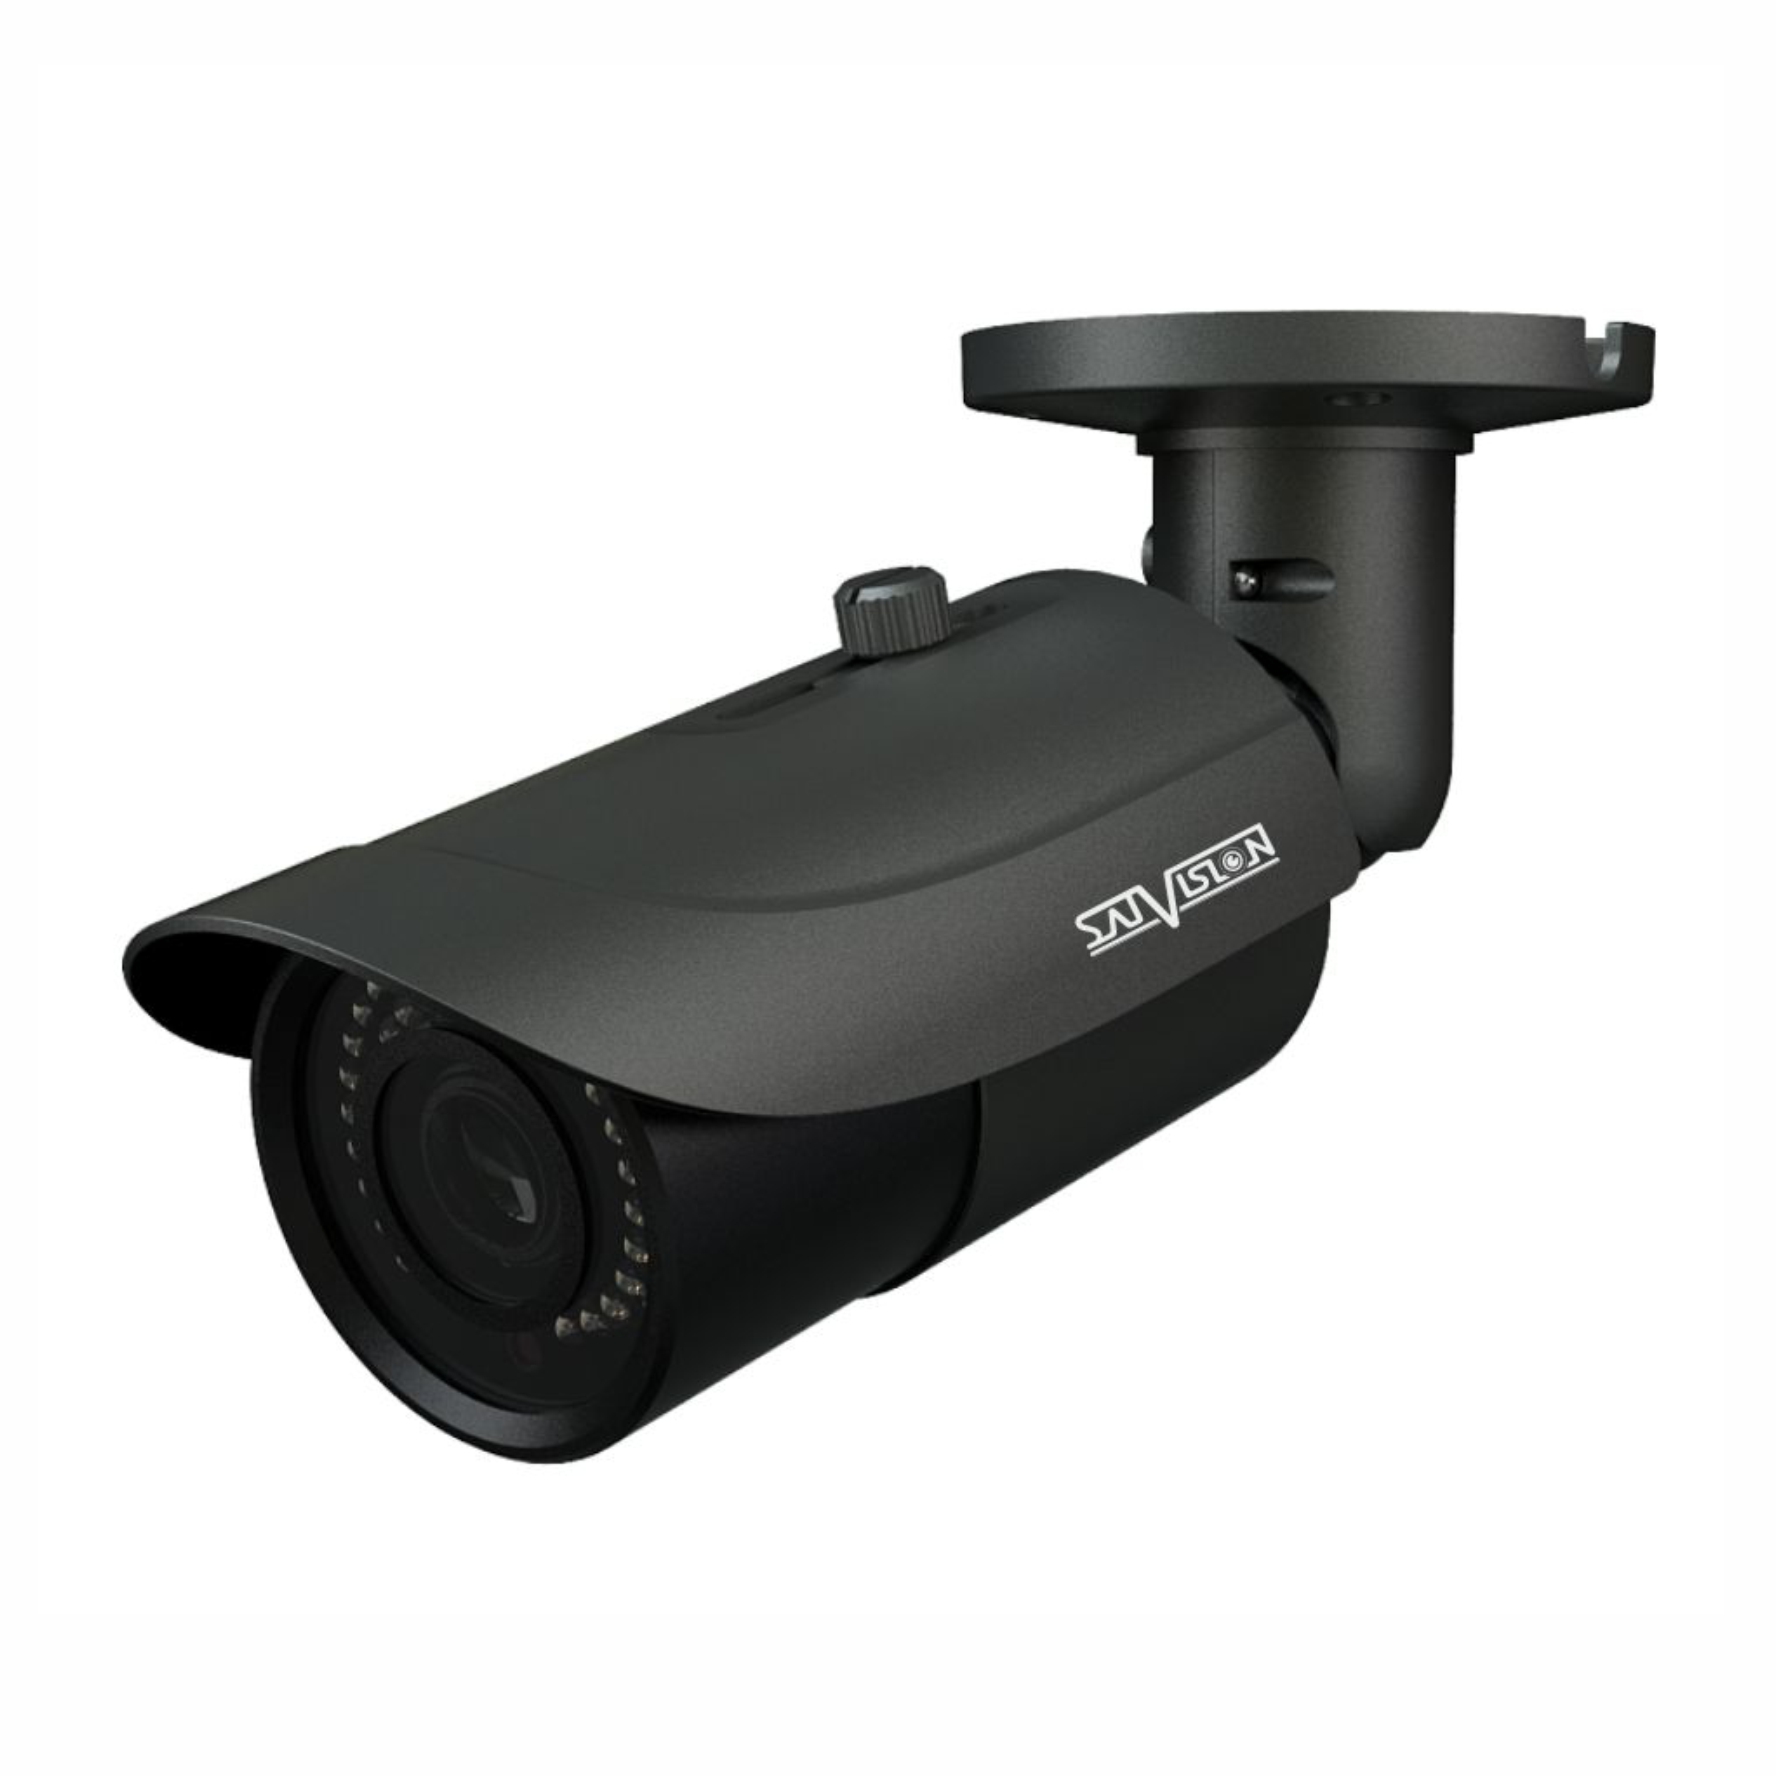 Портативное видеонаблюдение. IP видеокамера svi-s322v-SD-prov2. Svi-s323v SD SL 2mpix 2.8-12mm видеокамера IP. SVC-s172 2 Mpix 2.8mm UTC/Dip видеокамера AHD. Камера Satvision уличная 5мп.